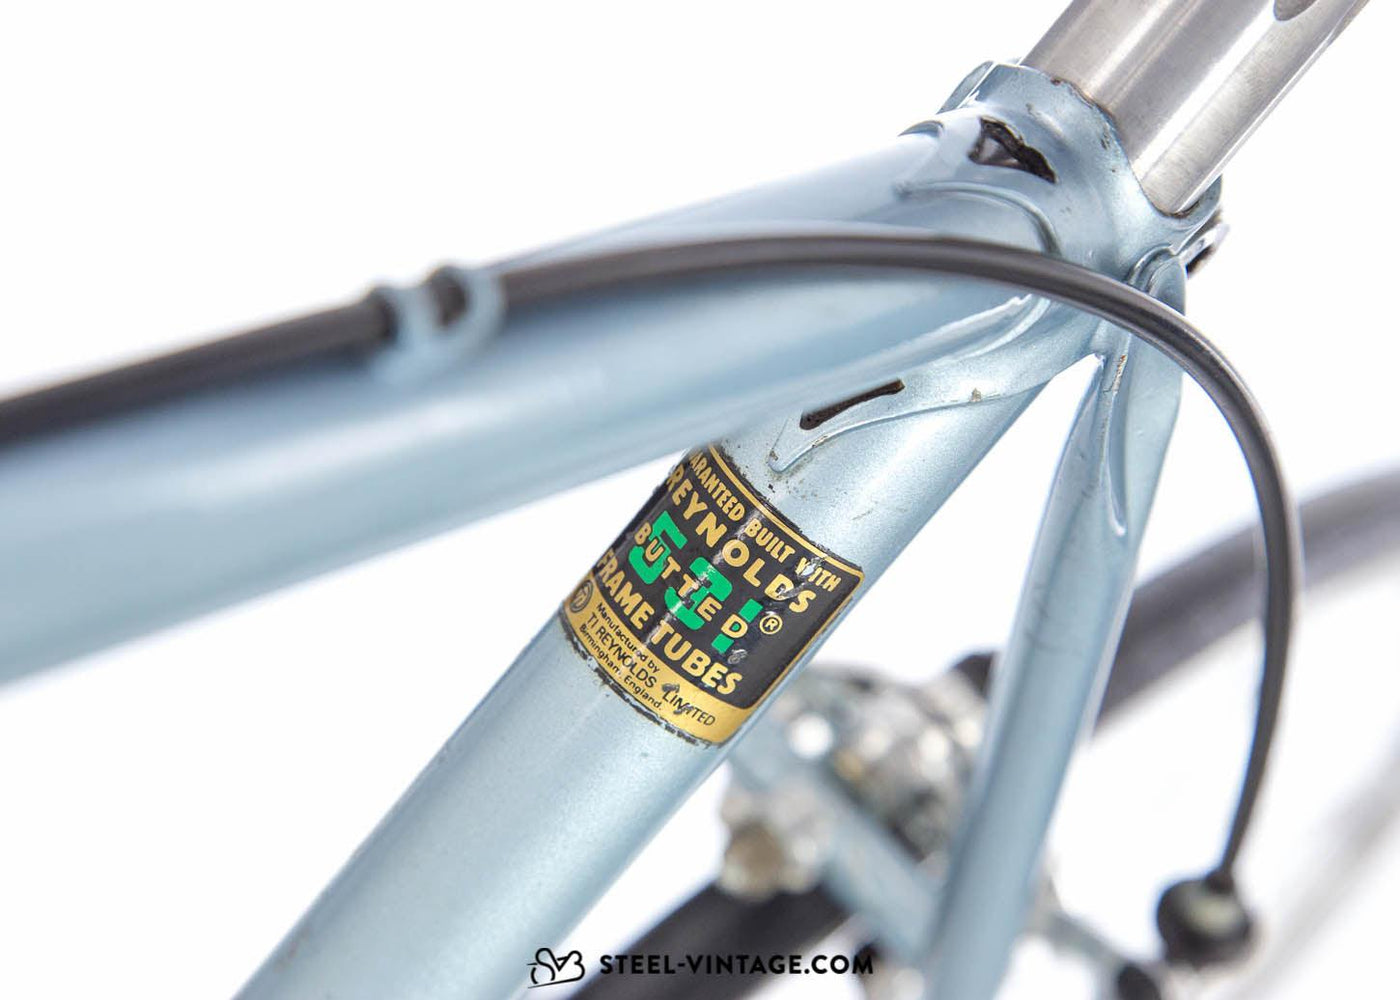 Tour de Suisse Classic Road Bike 1980s - Steel Vintage Bikes